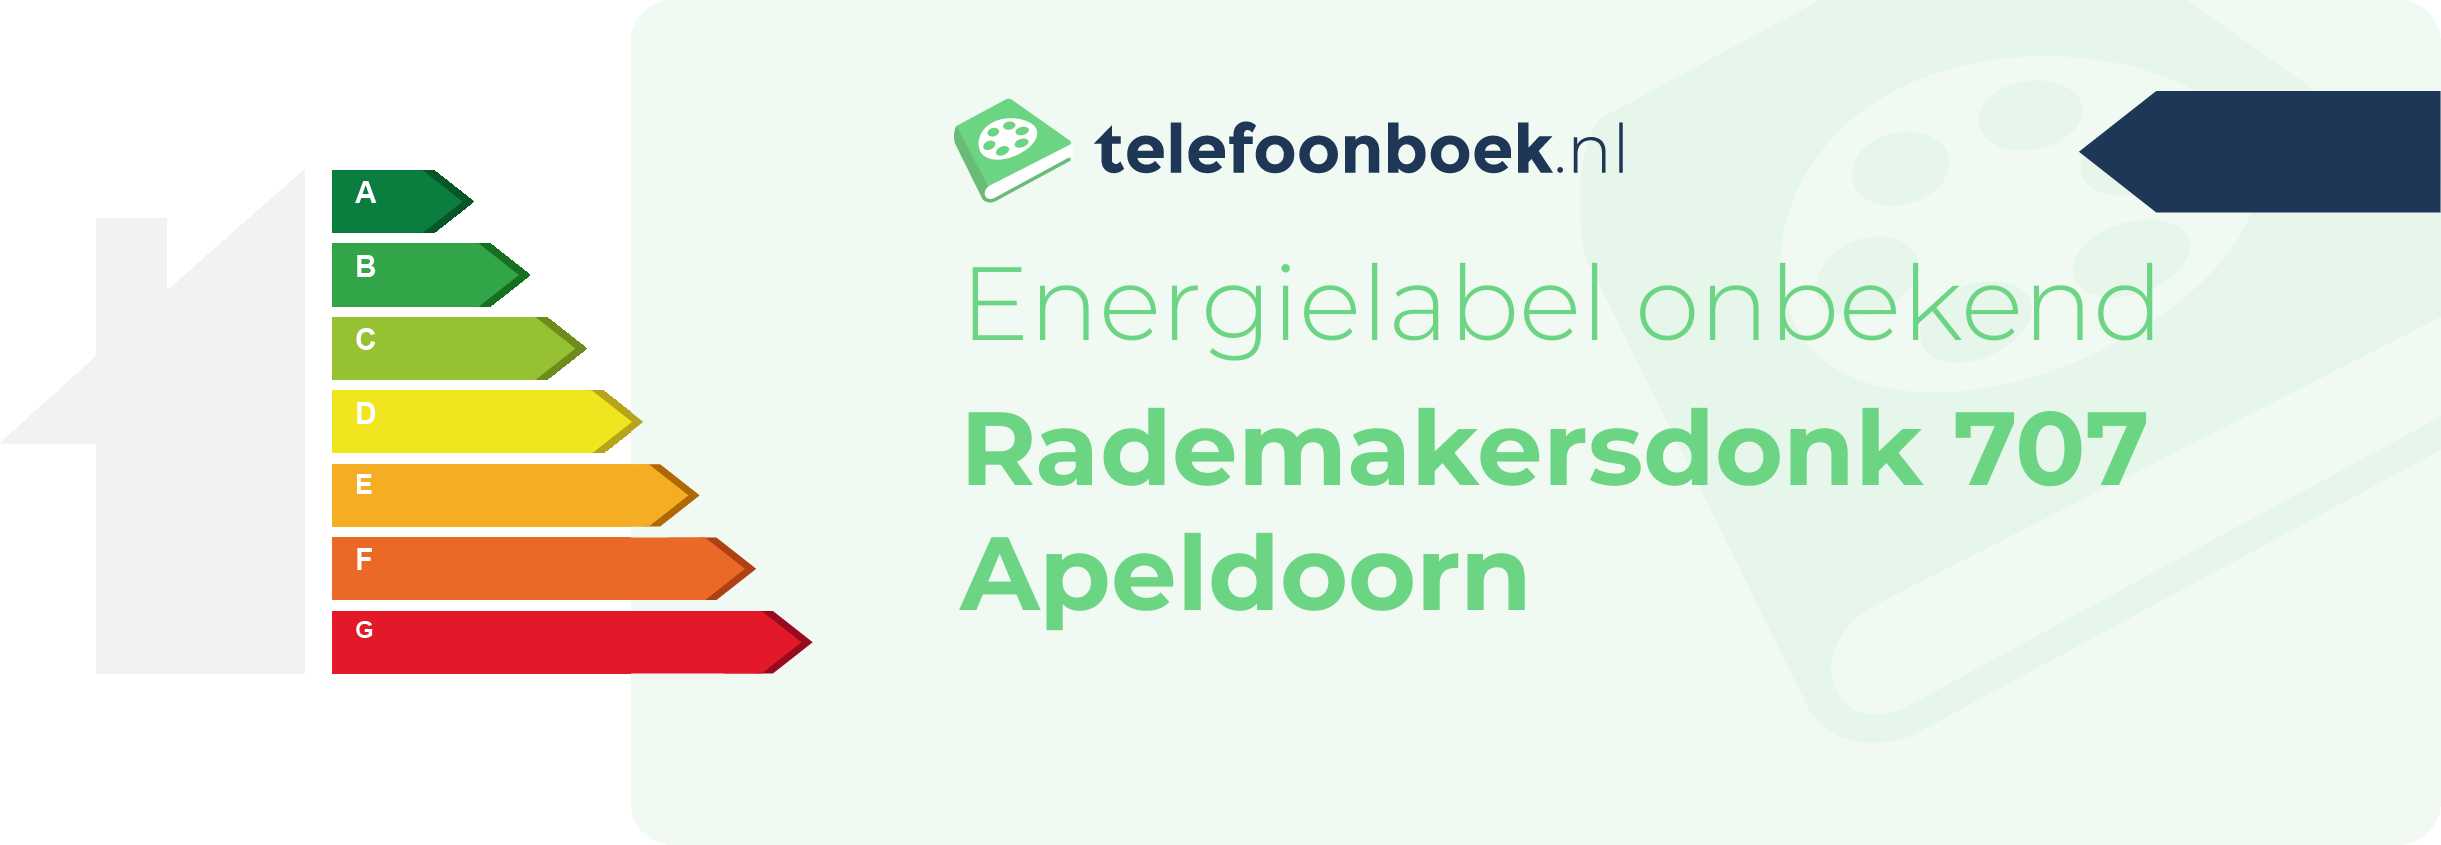 Energielabel Rademakersdonk 707 Apeldoorn